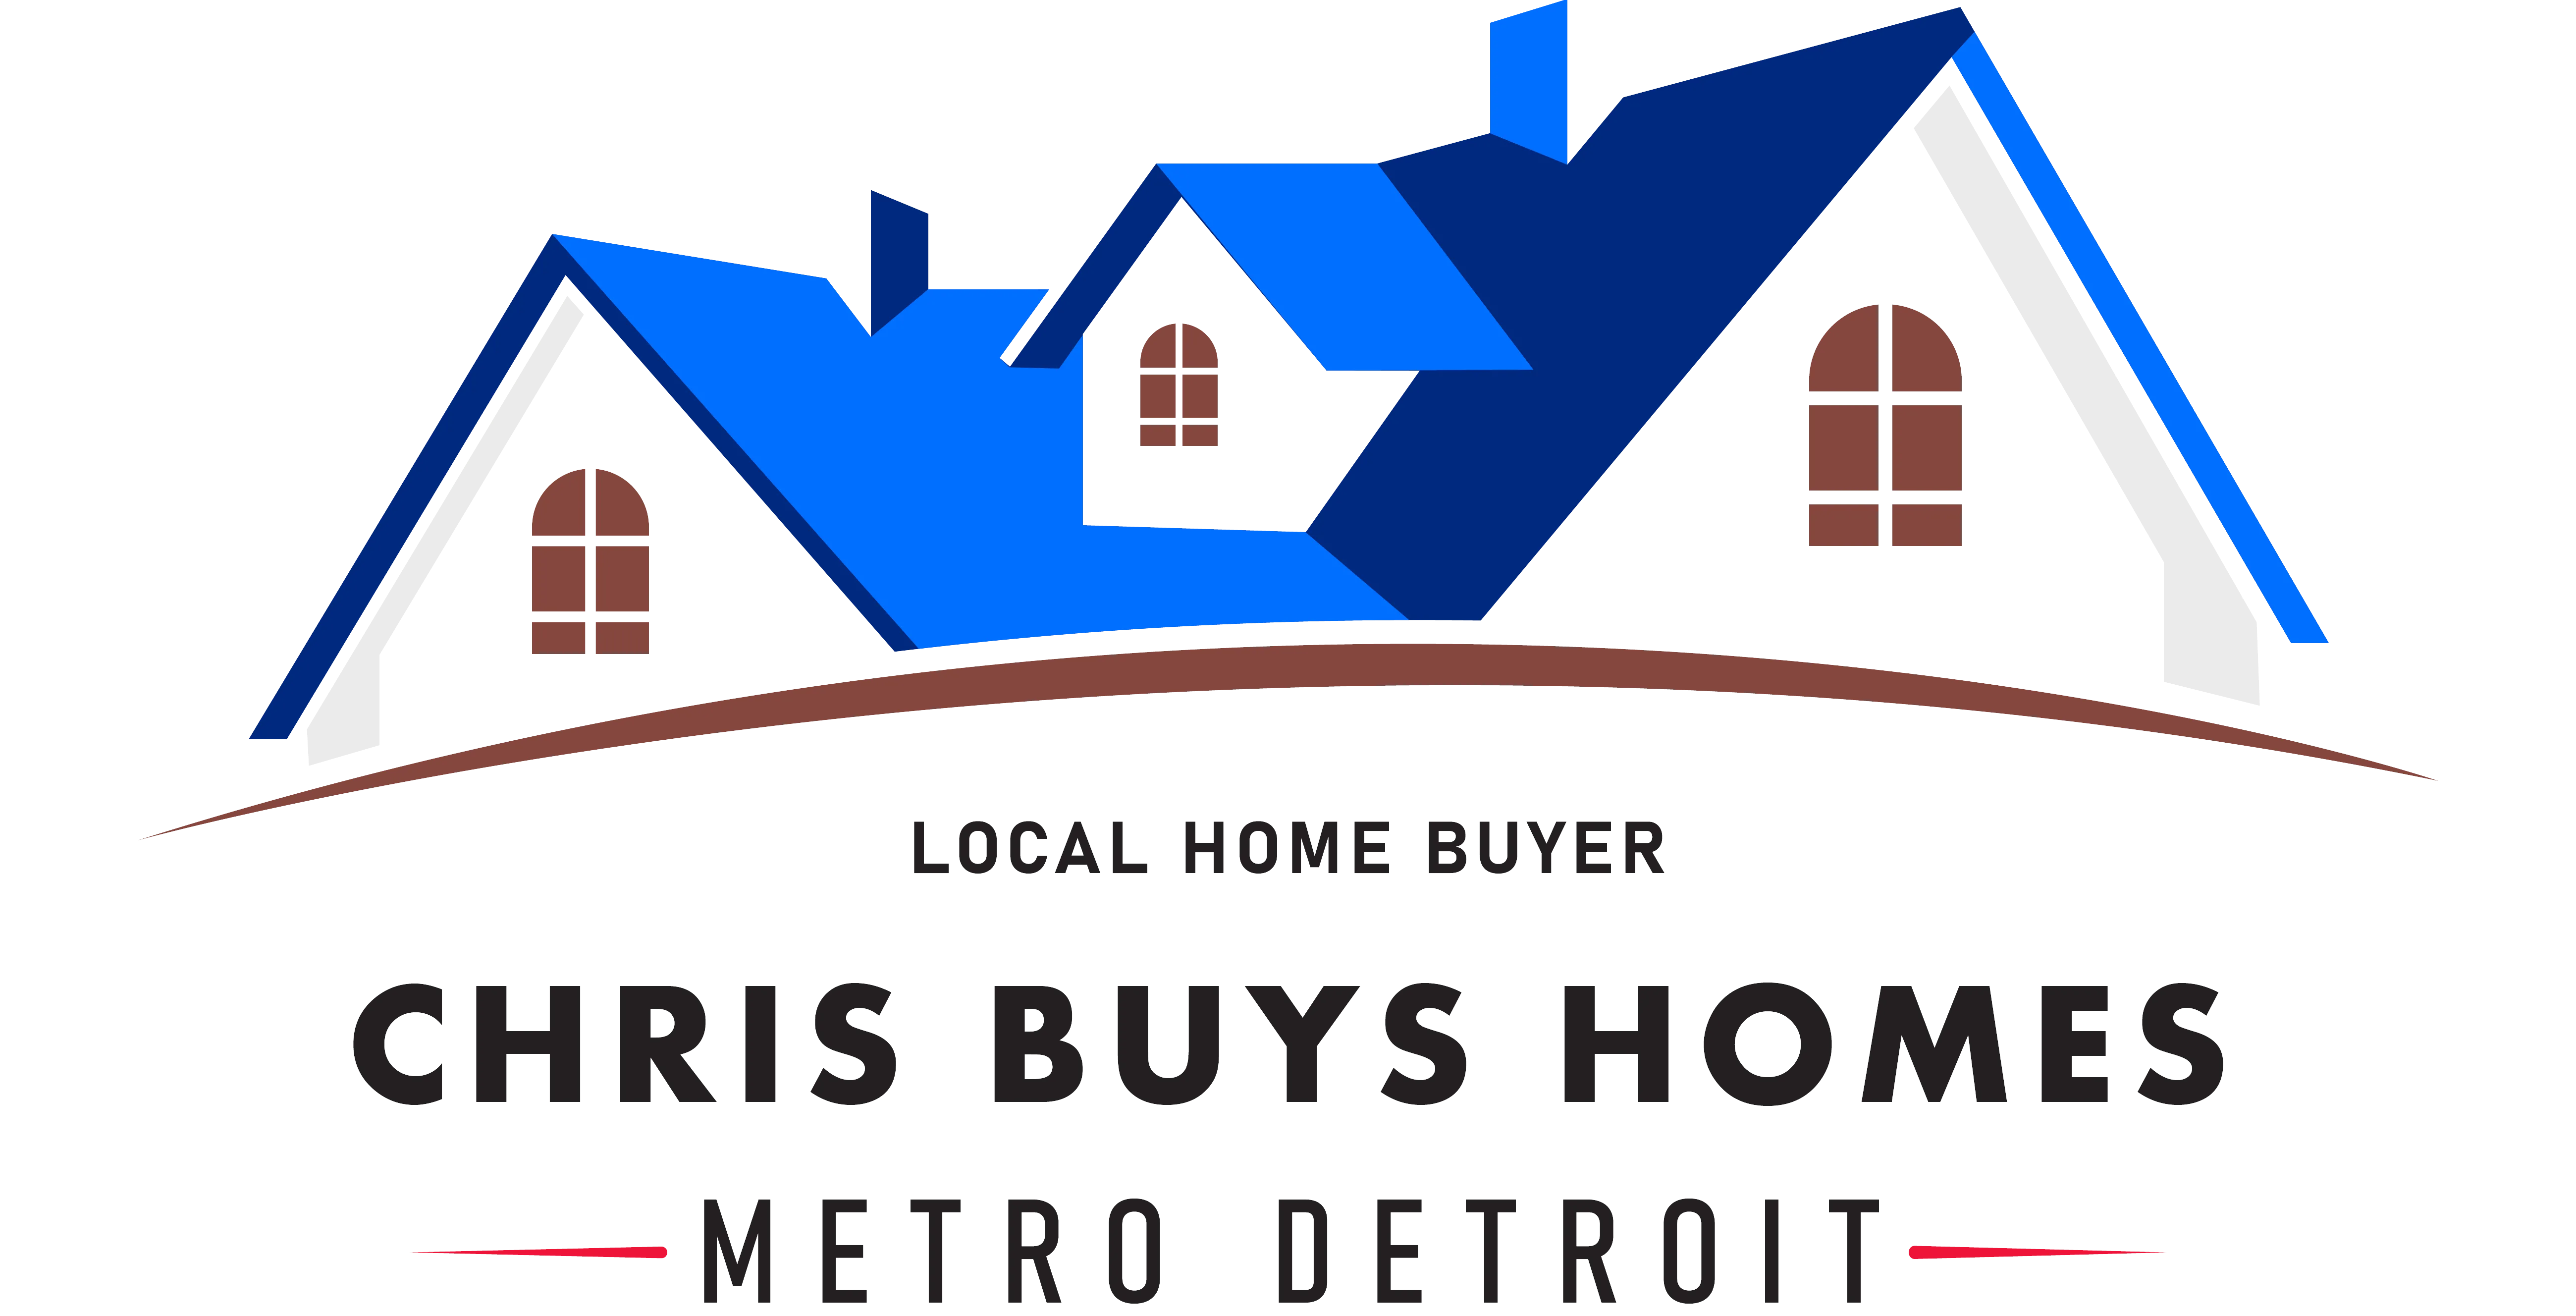 Chris Buys Homes in Metro Detroit Logo